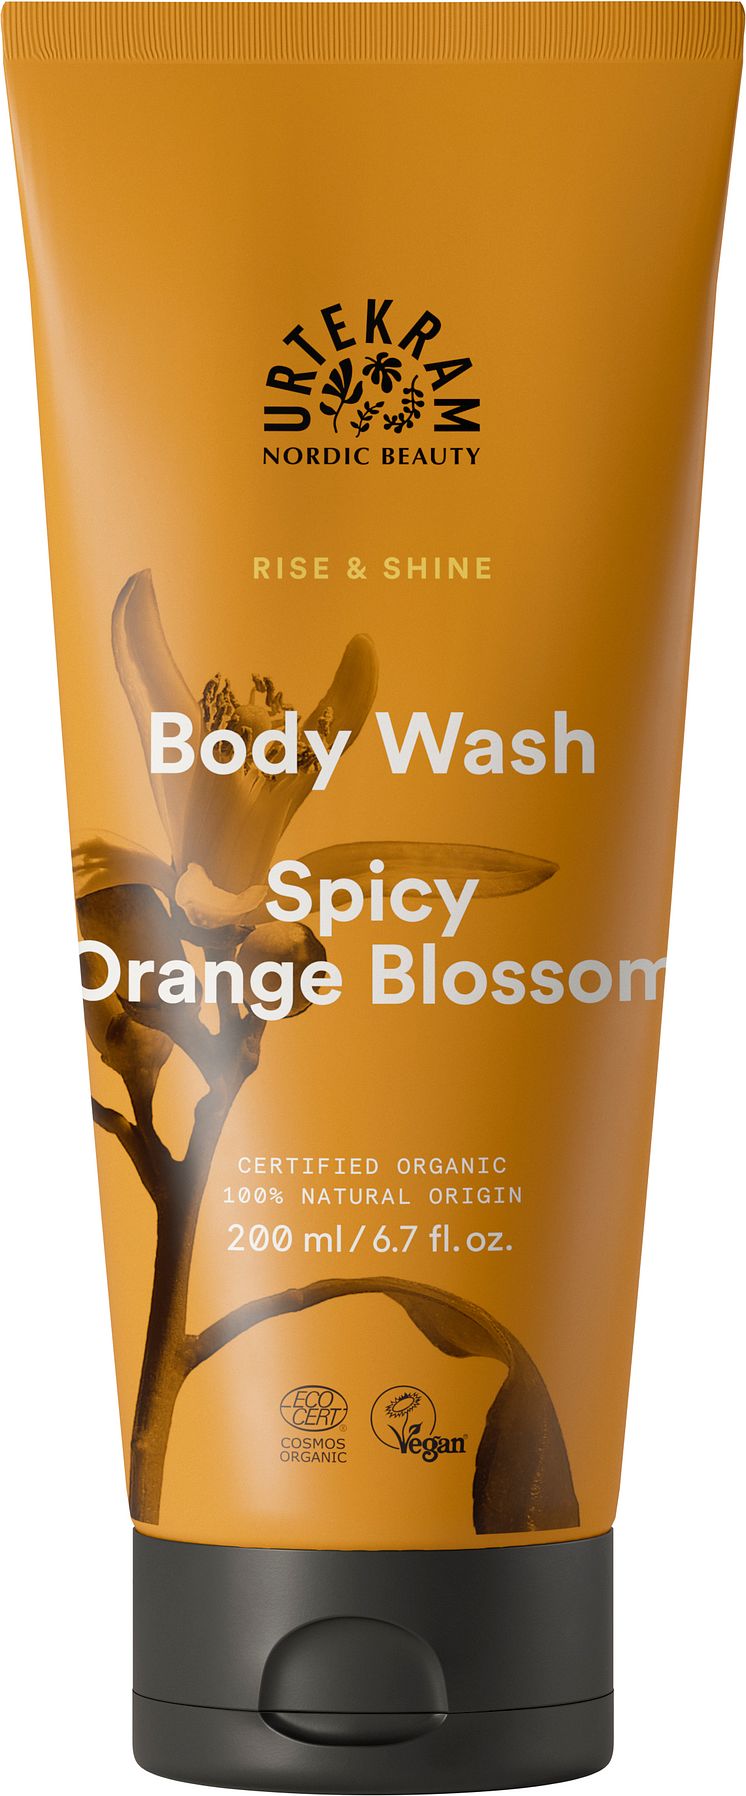 RISE & SHINE Body Wash